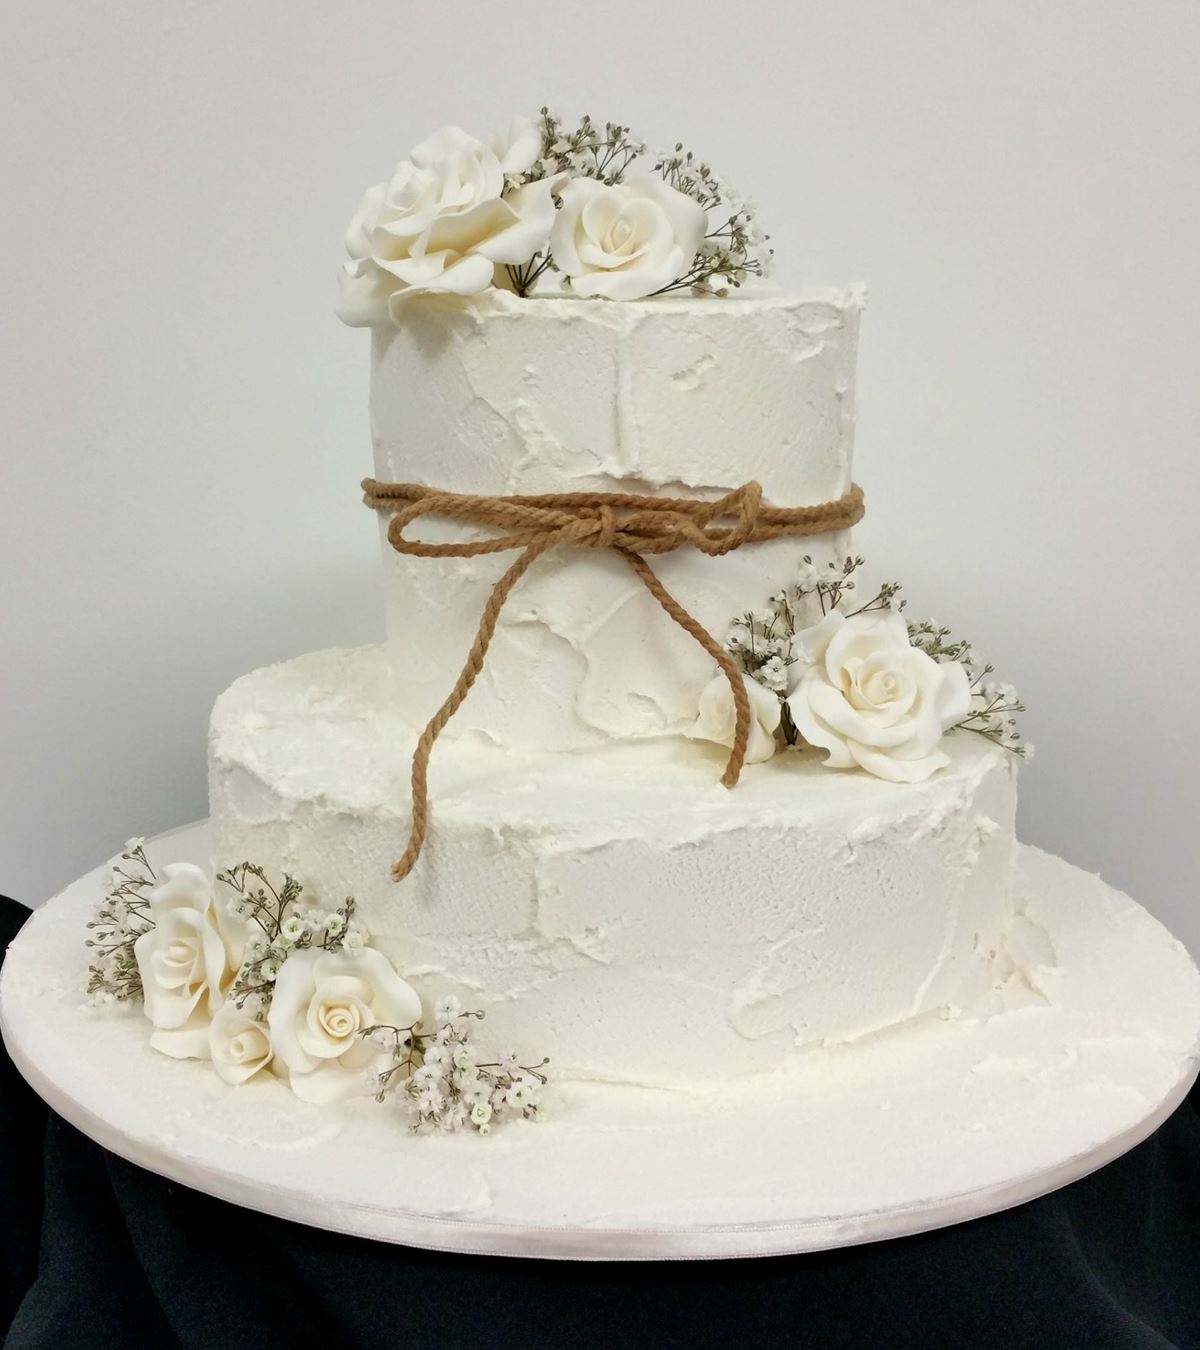 Wedding cake with fondant icing